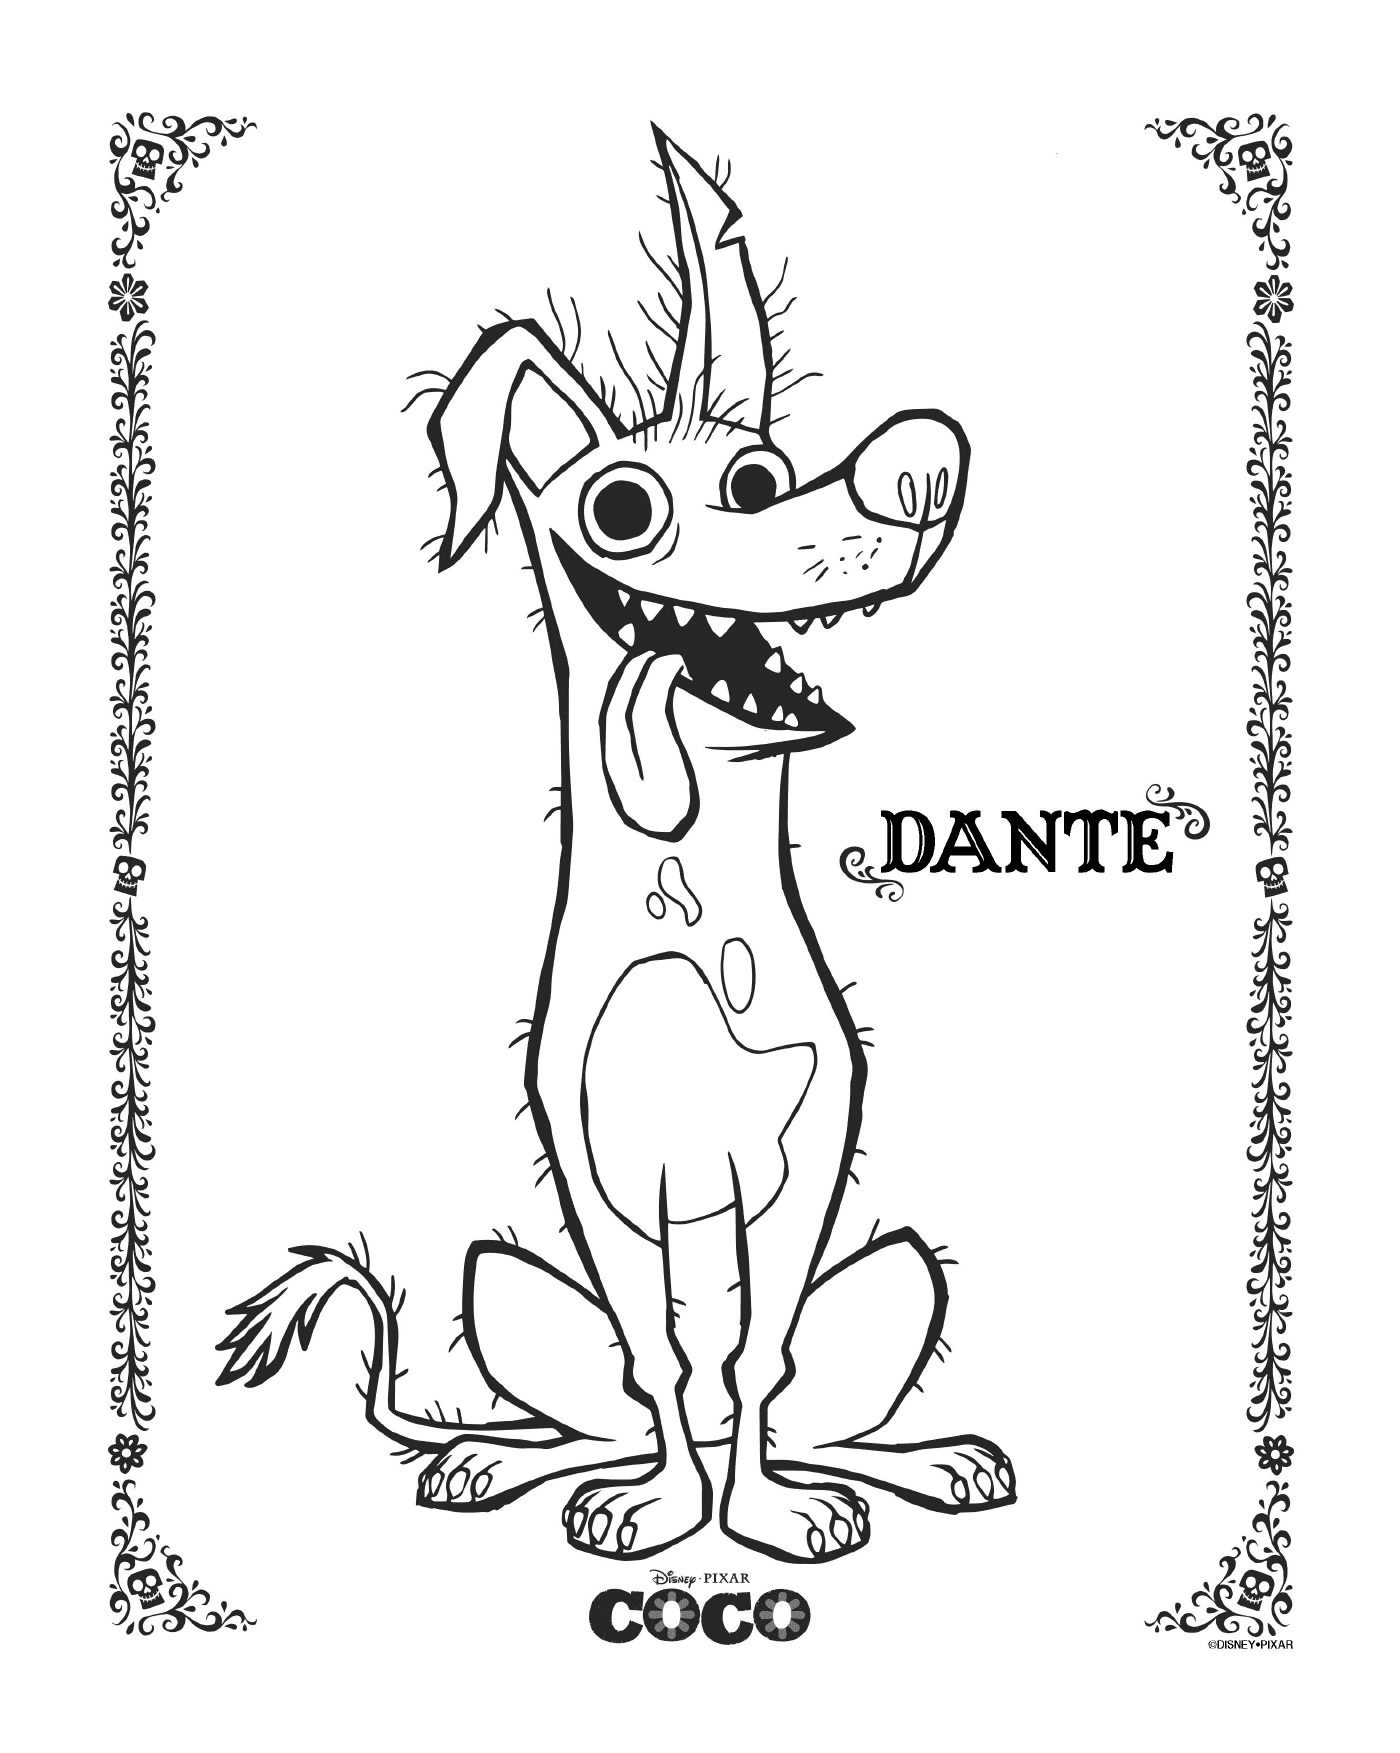  Dante in Coco, Disney 